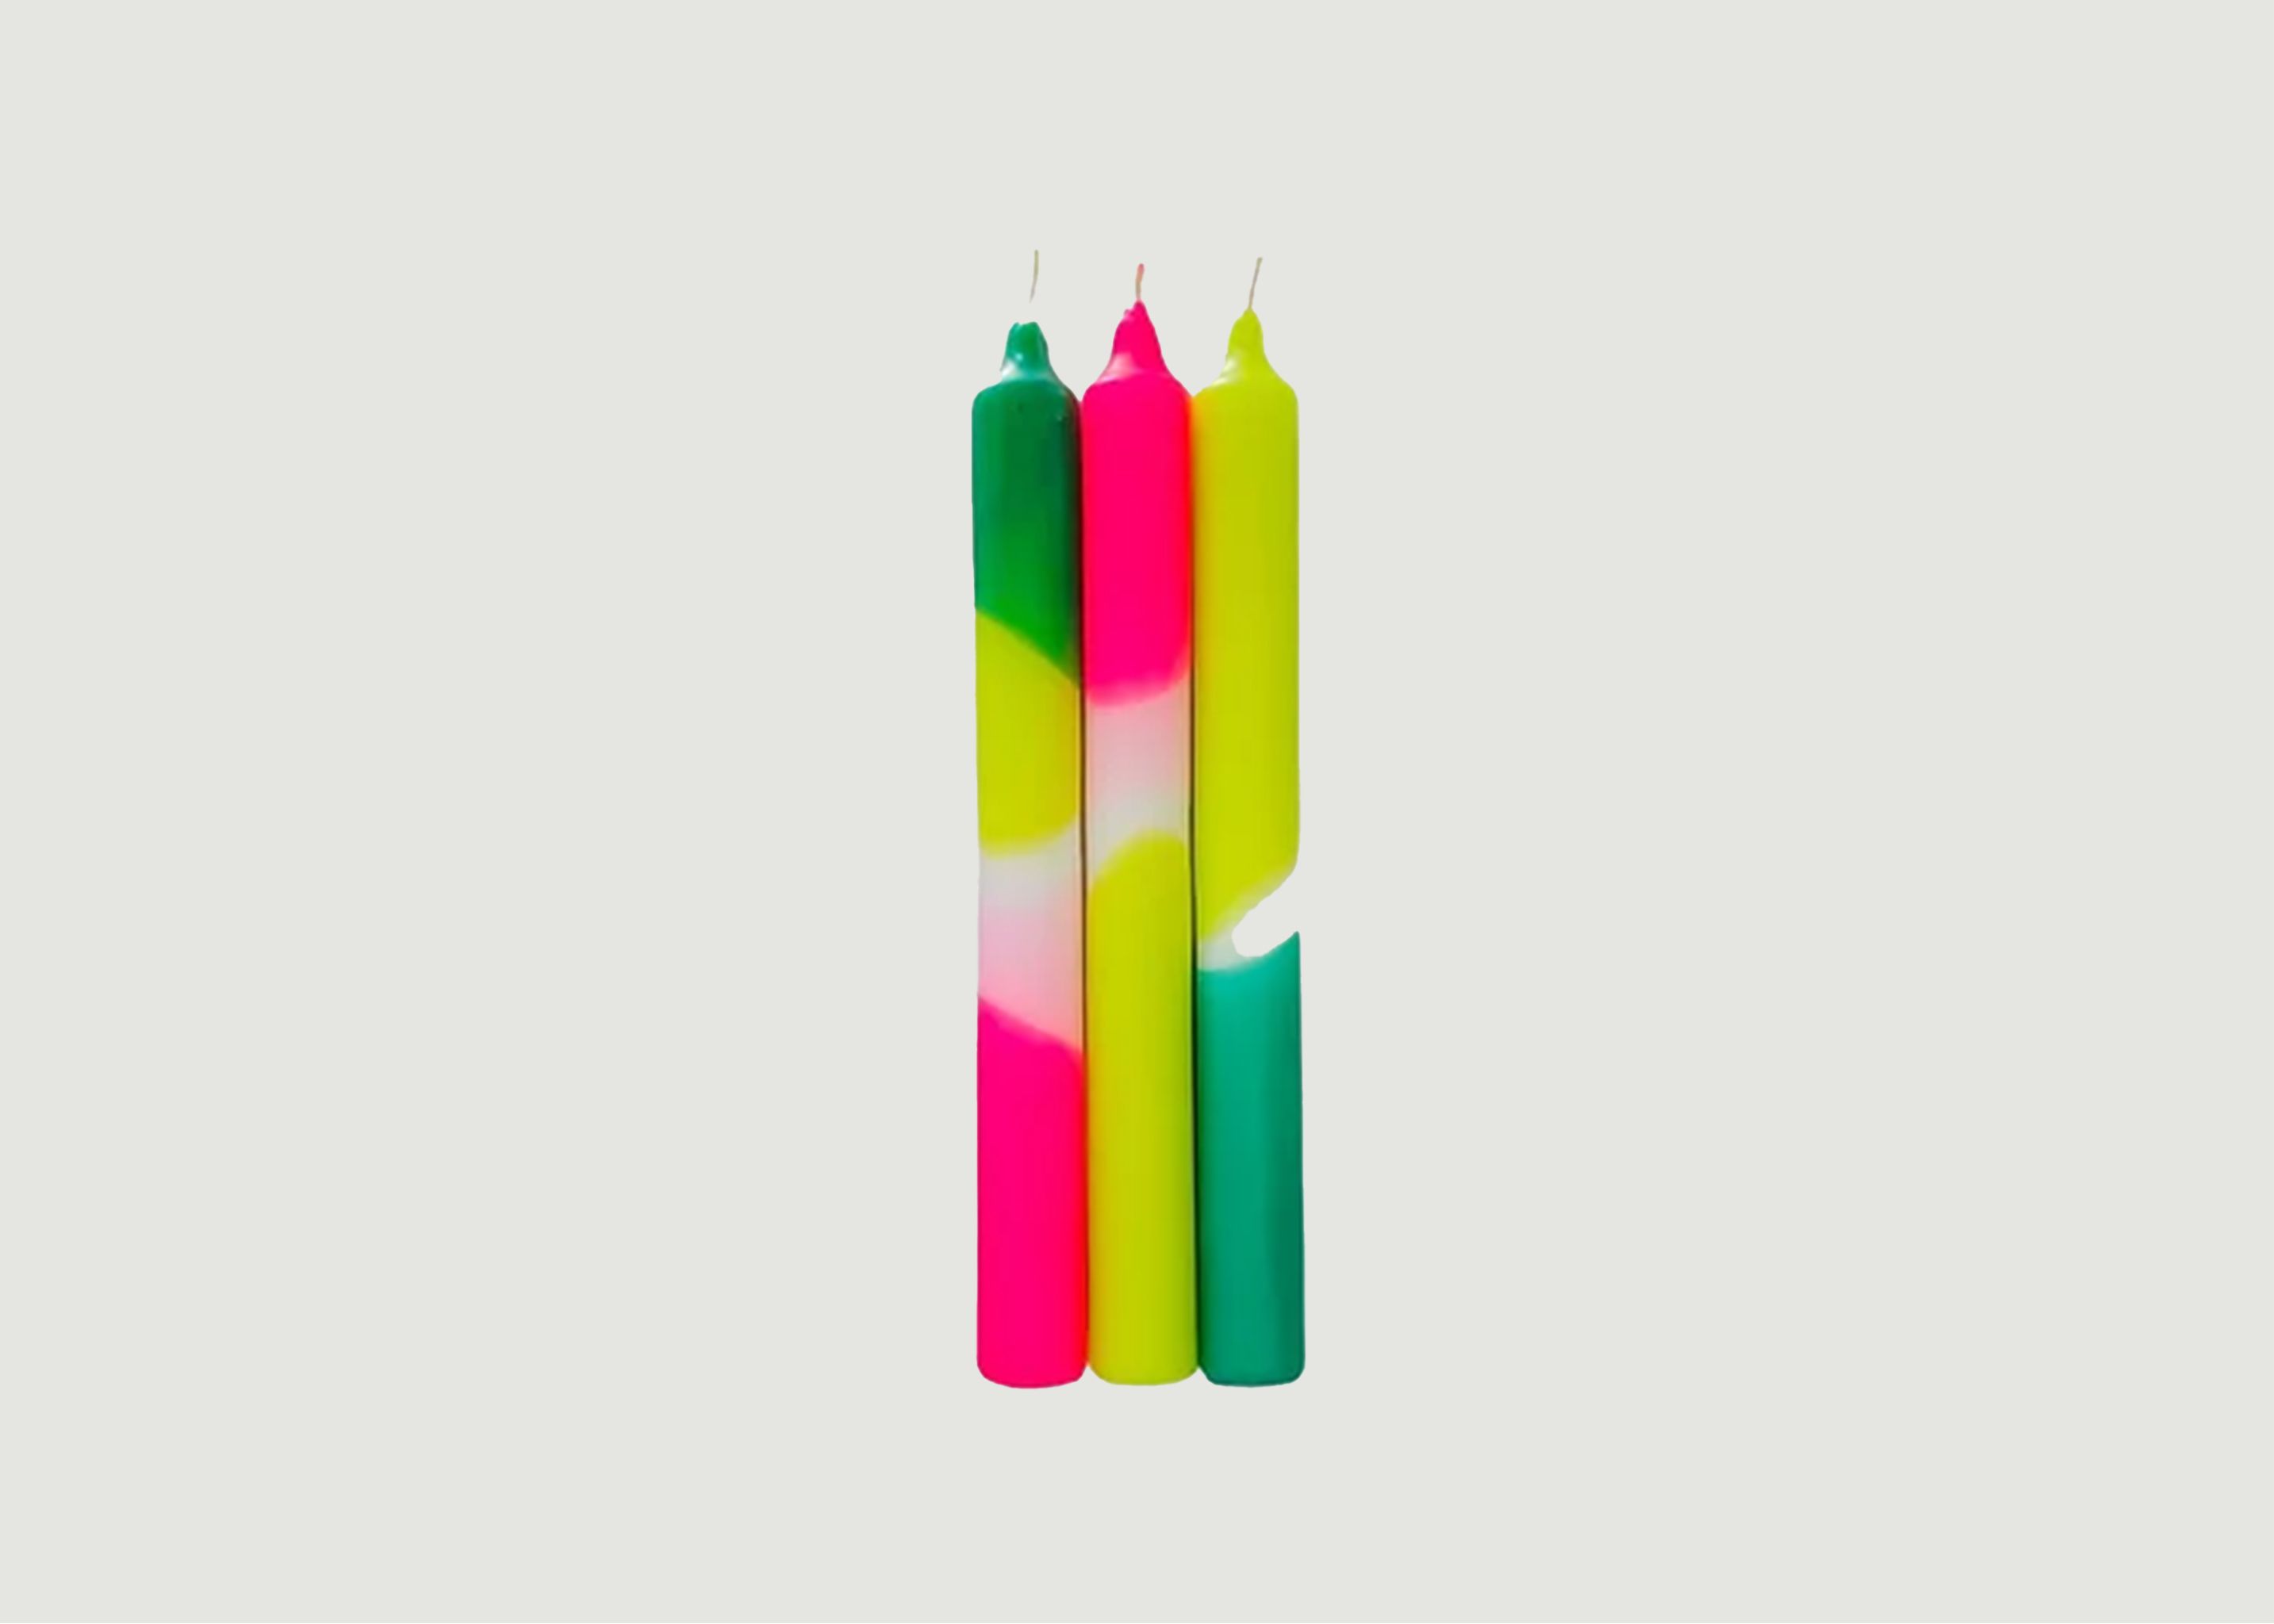 Dip Dye Neon Green Splash Candle - Pink Stories